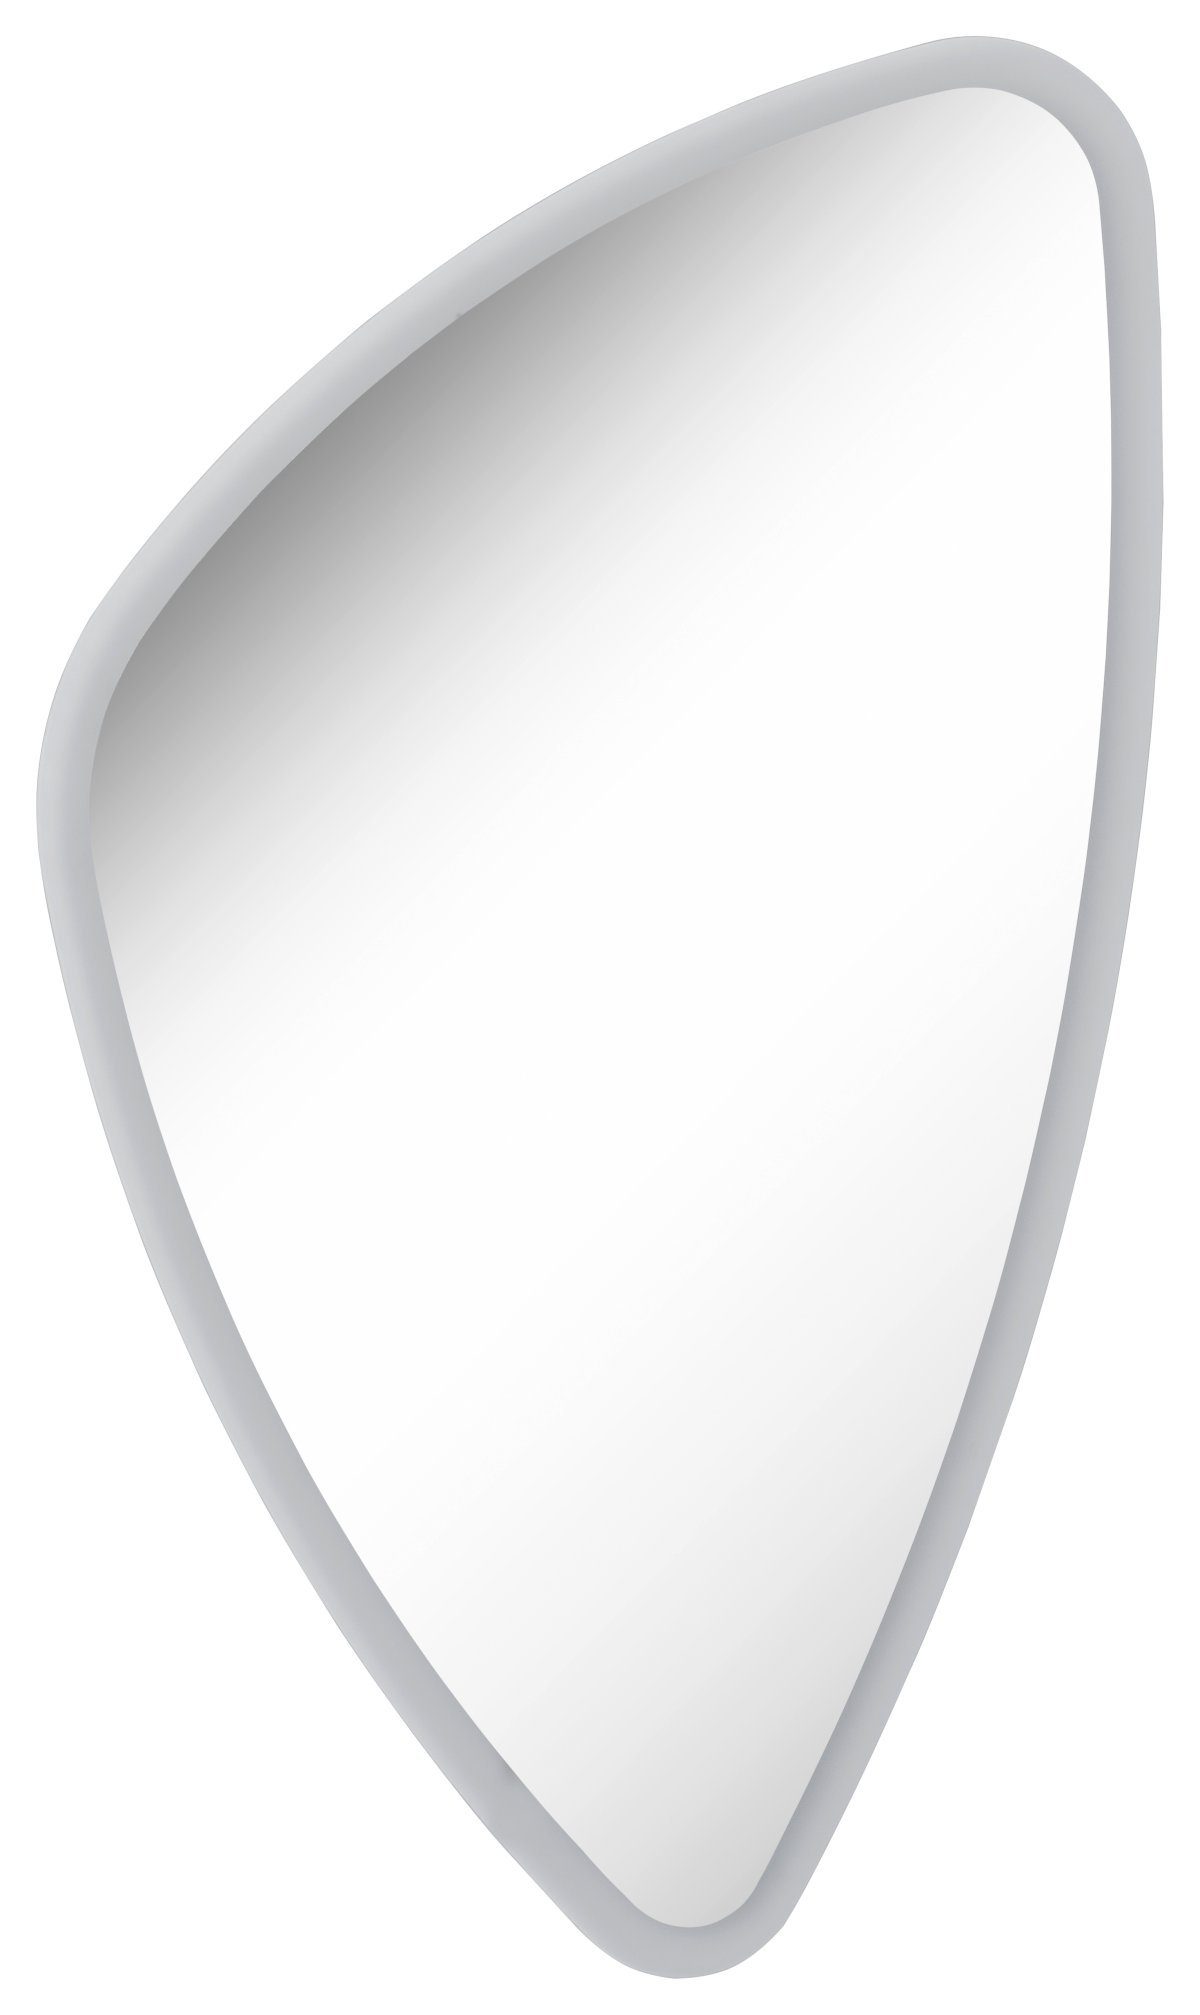 FACKELMANN Badspiegel Mirrors cm 56 / Spiegel / Breite organic LED-Beleuchtung umlaufende